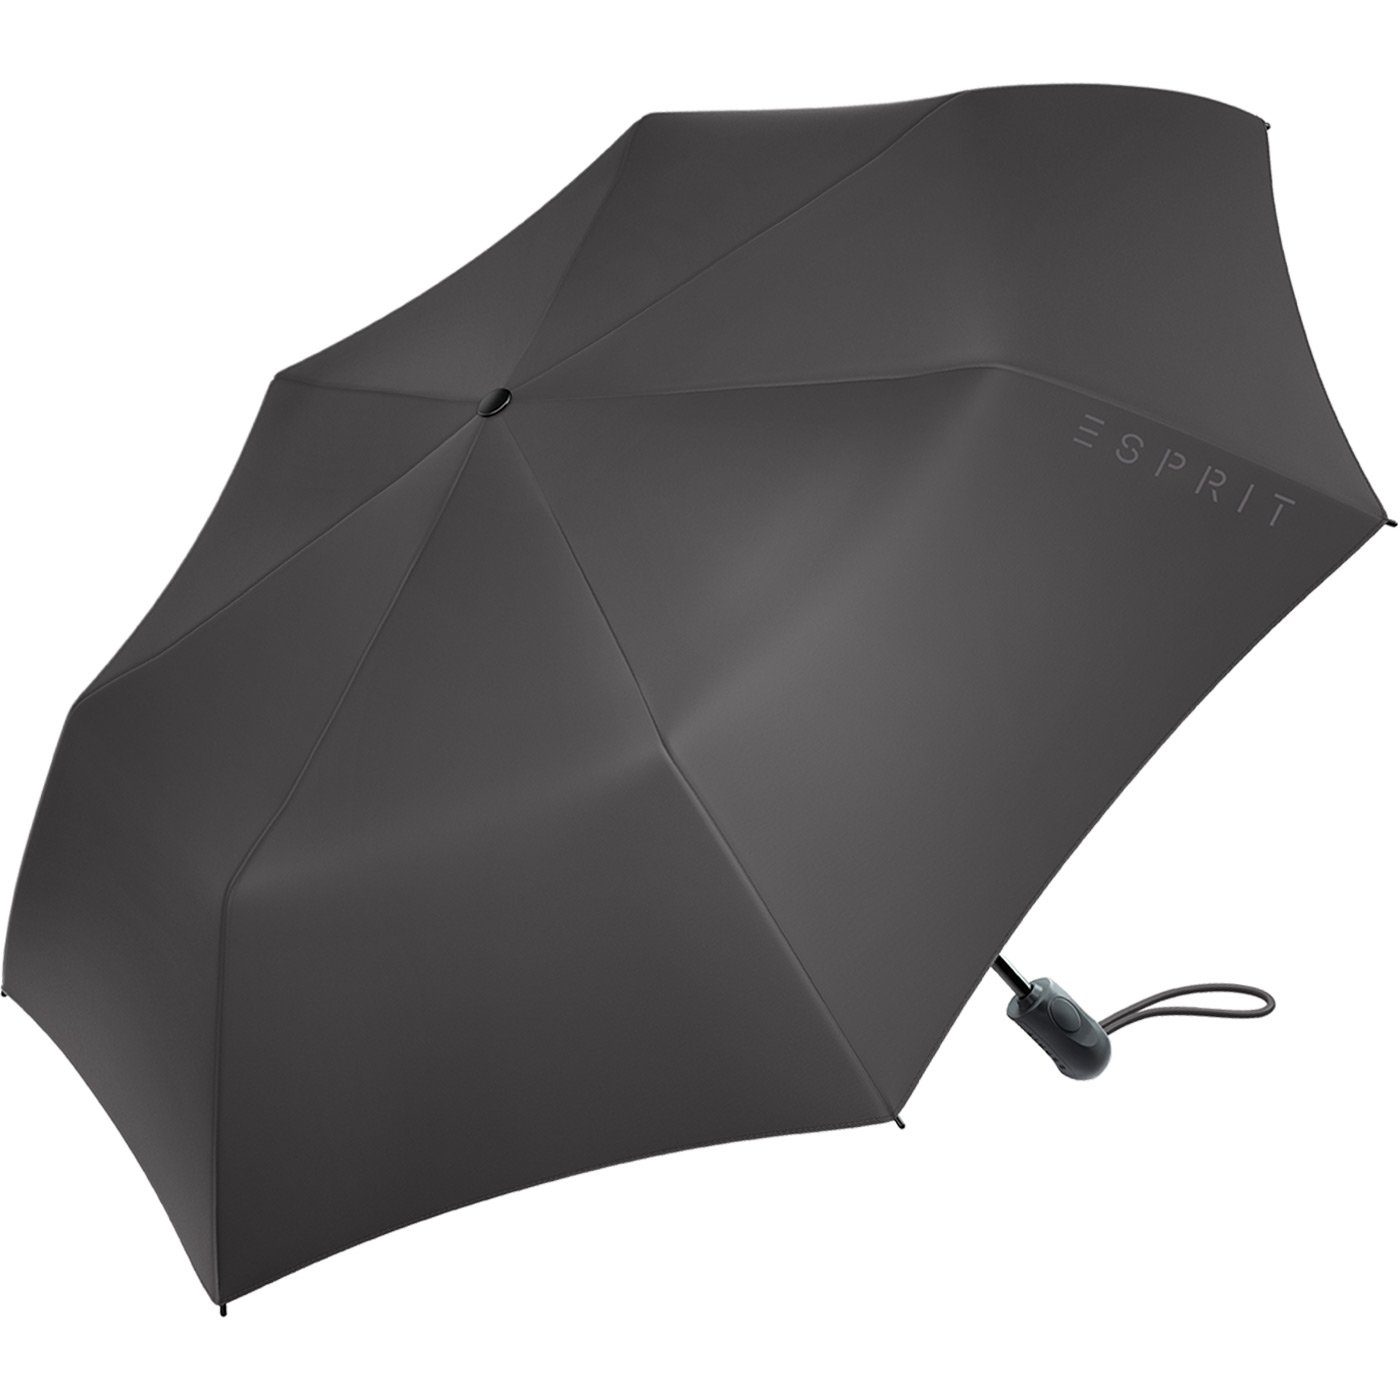 Easymatic Schirm praktisch schwarz und Esprit stabil Auf-Zu Light Automatik, mit Taschenregenschirm